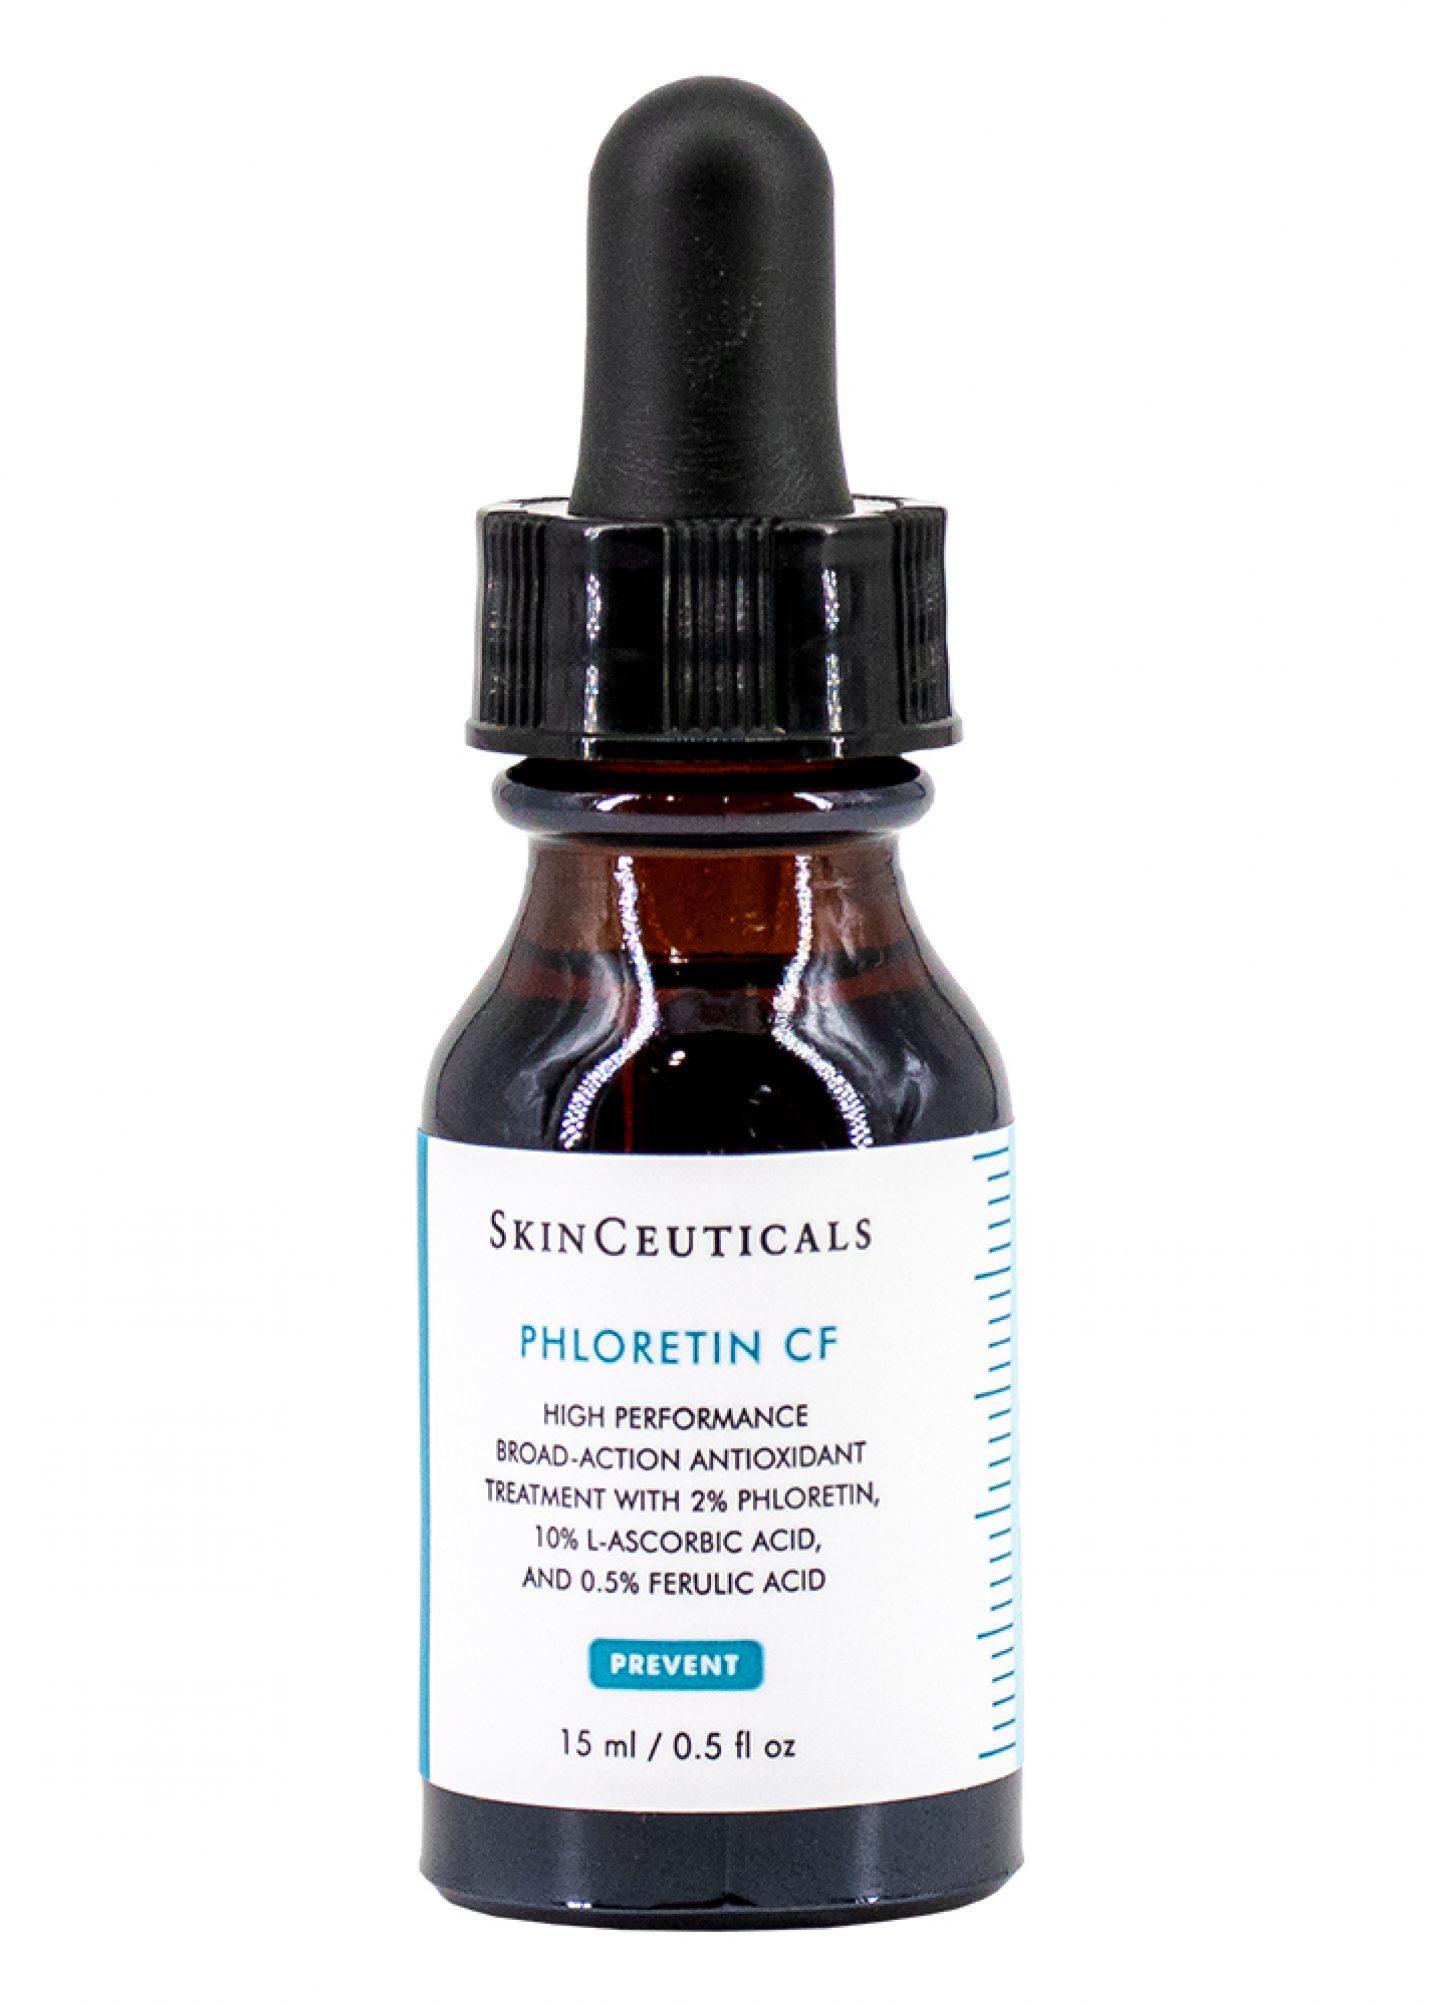 SkinCeuticals Phloertin CF_EEZ-Apotheke